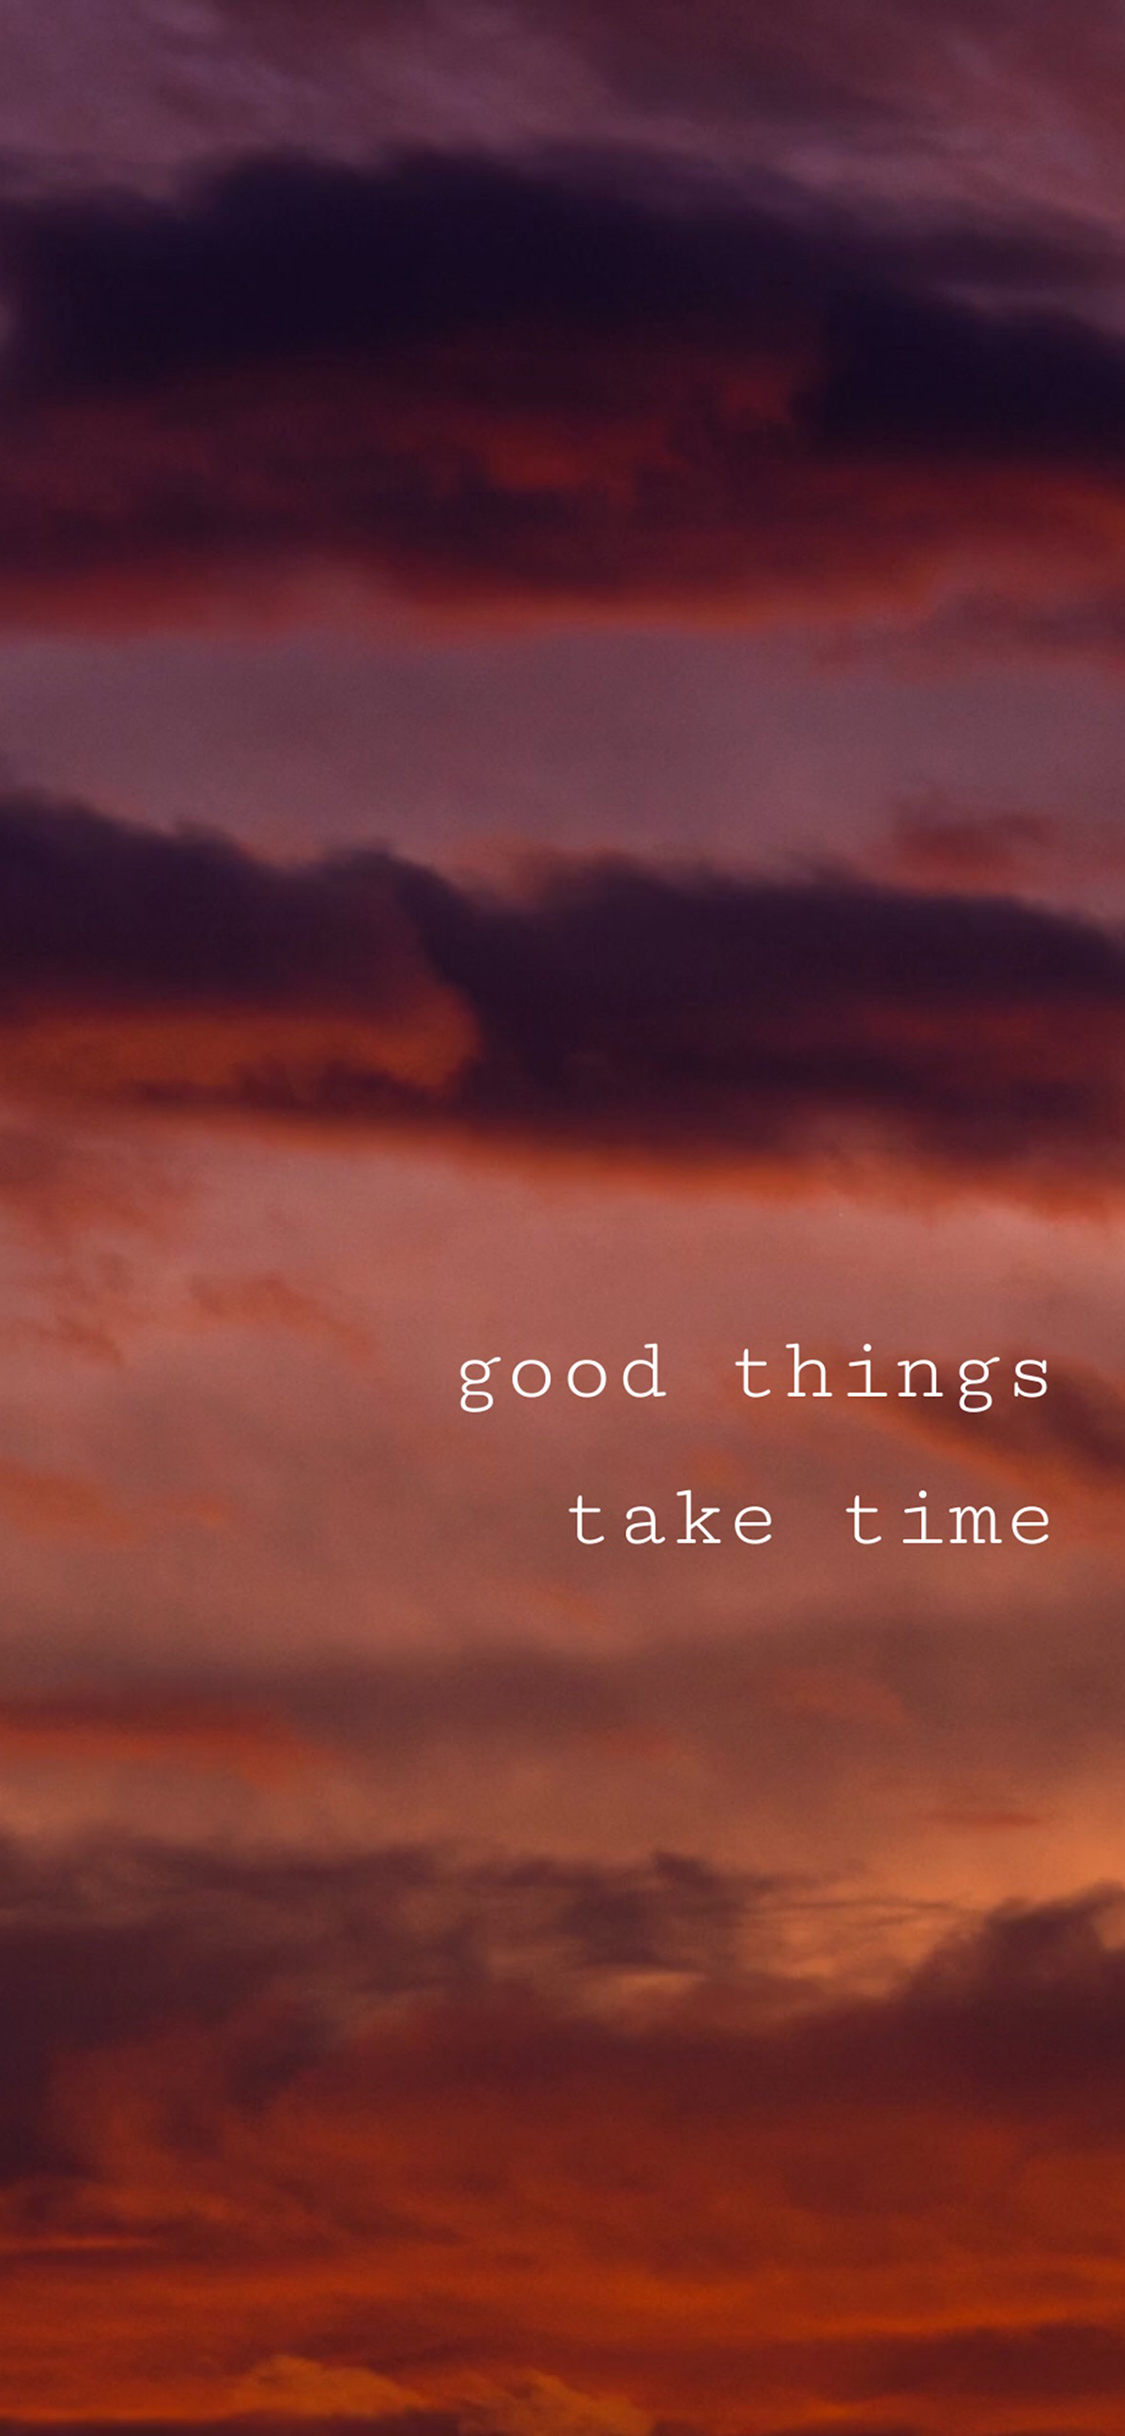 好事多磨good Things Take Time 天空英语英文苹果手机高清壁纸1125x2436 5分排列3